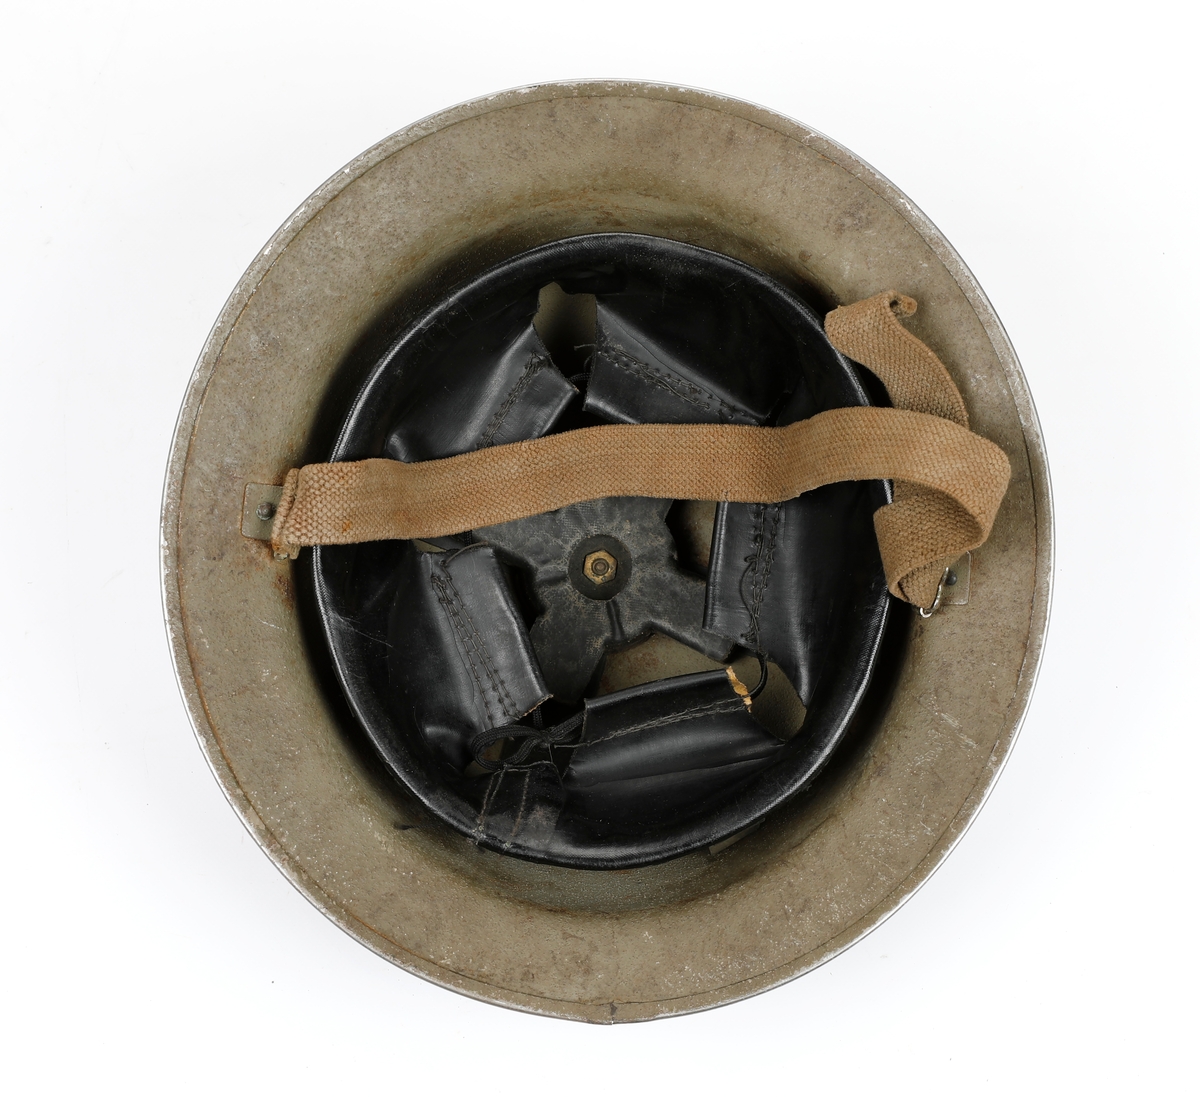 Britisk hjelm brukt under andre verdenskrig. Hjelmen har lik utforming som M/1916.
